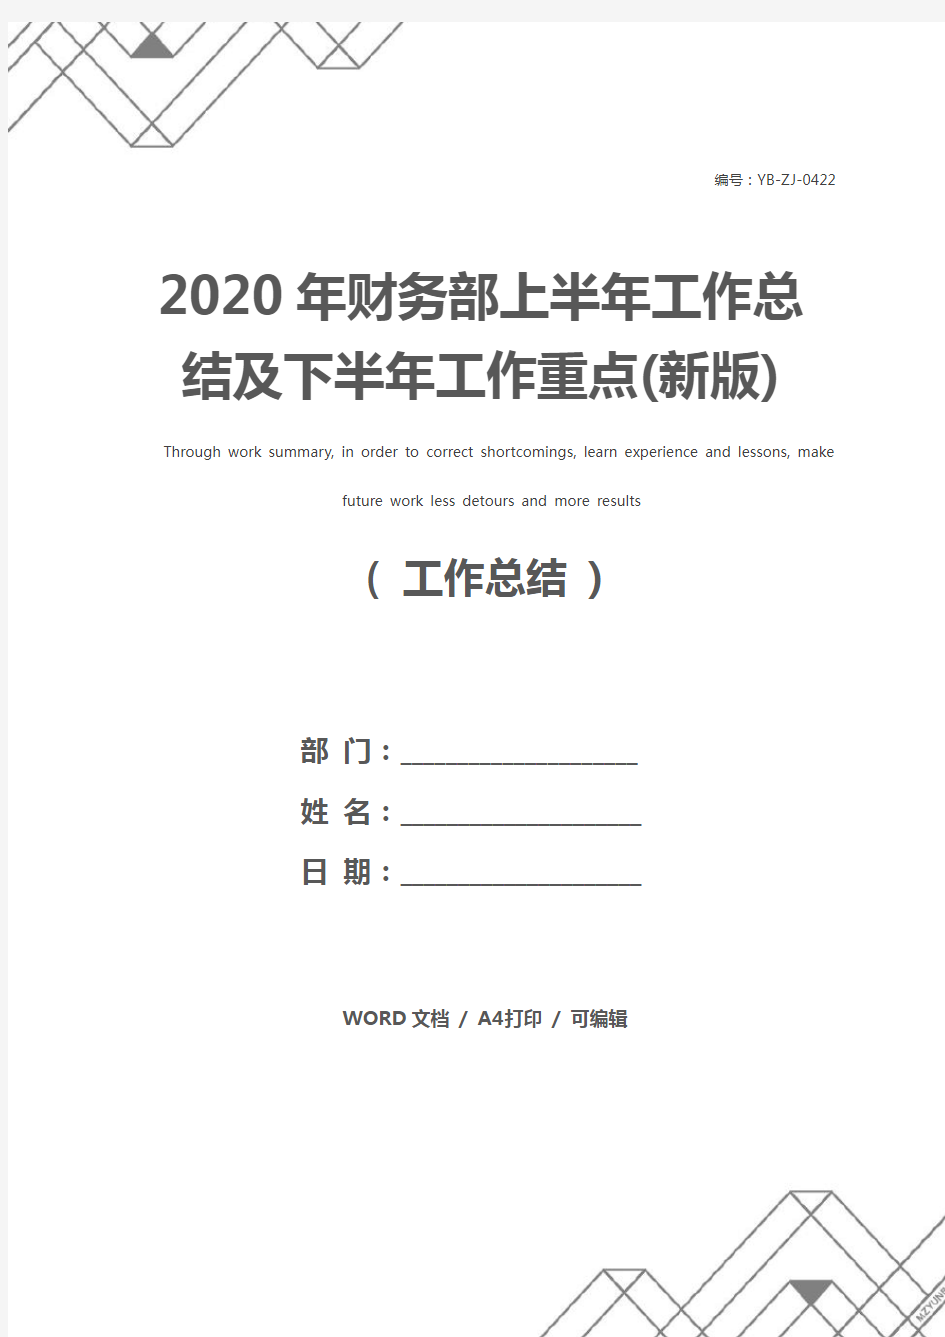 2020年财务部上半年工作总结及下半年工作重点(新版)